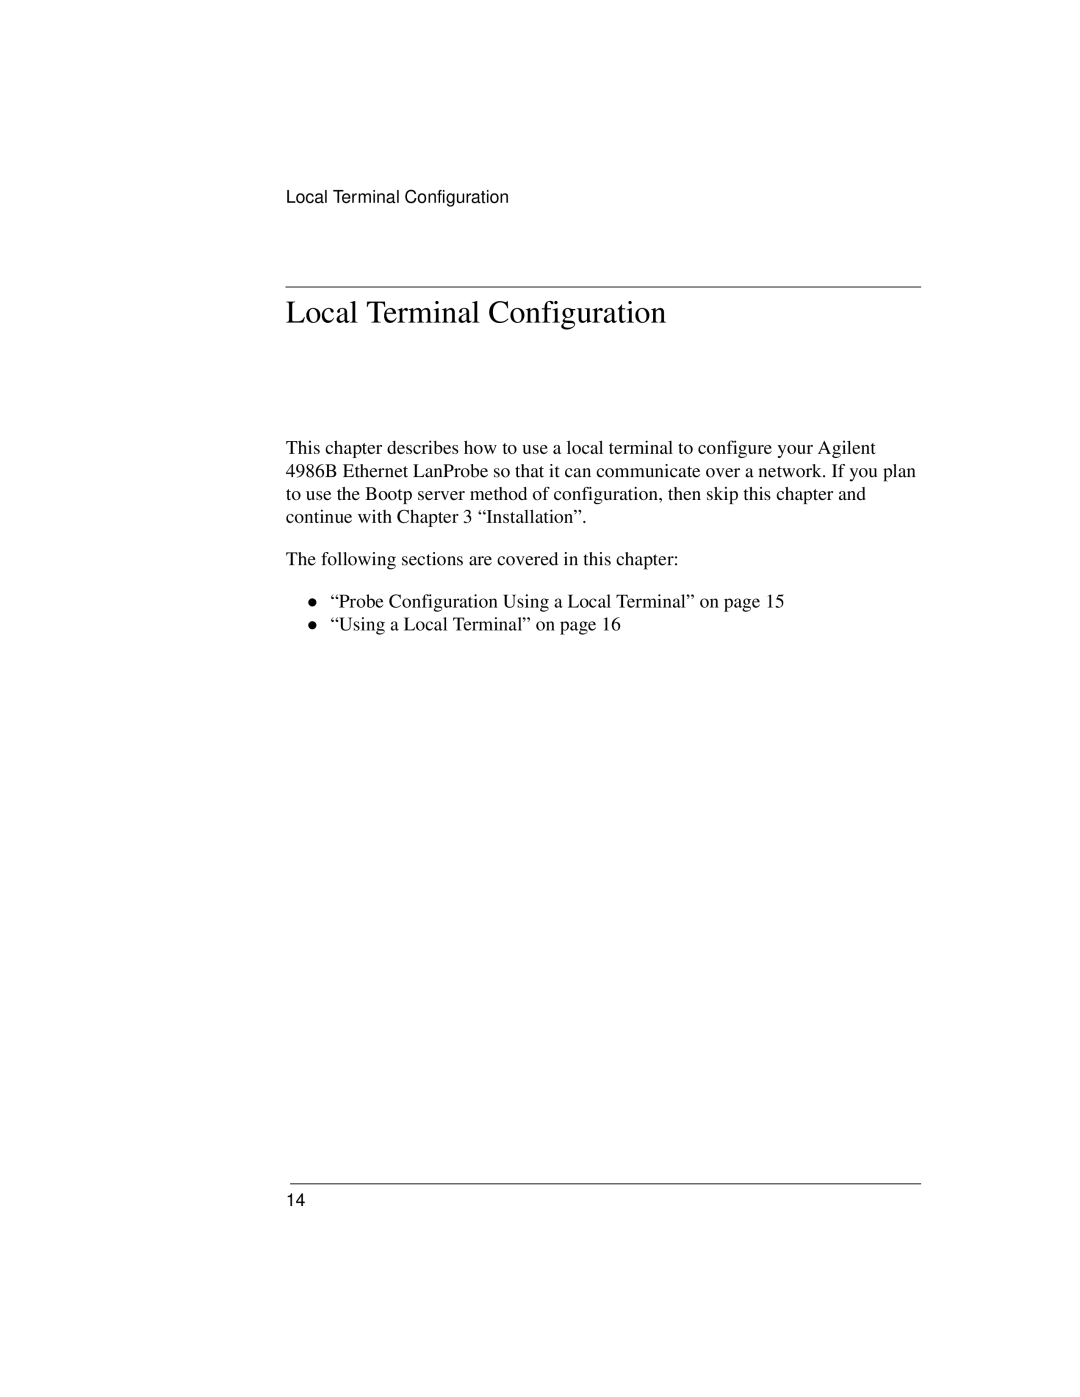 IBM 4986B LanProbe manual Local Terminal Configuration 